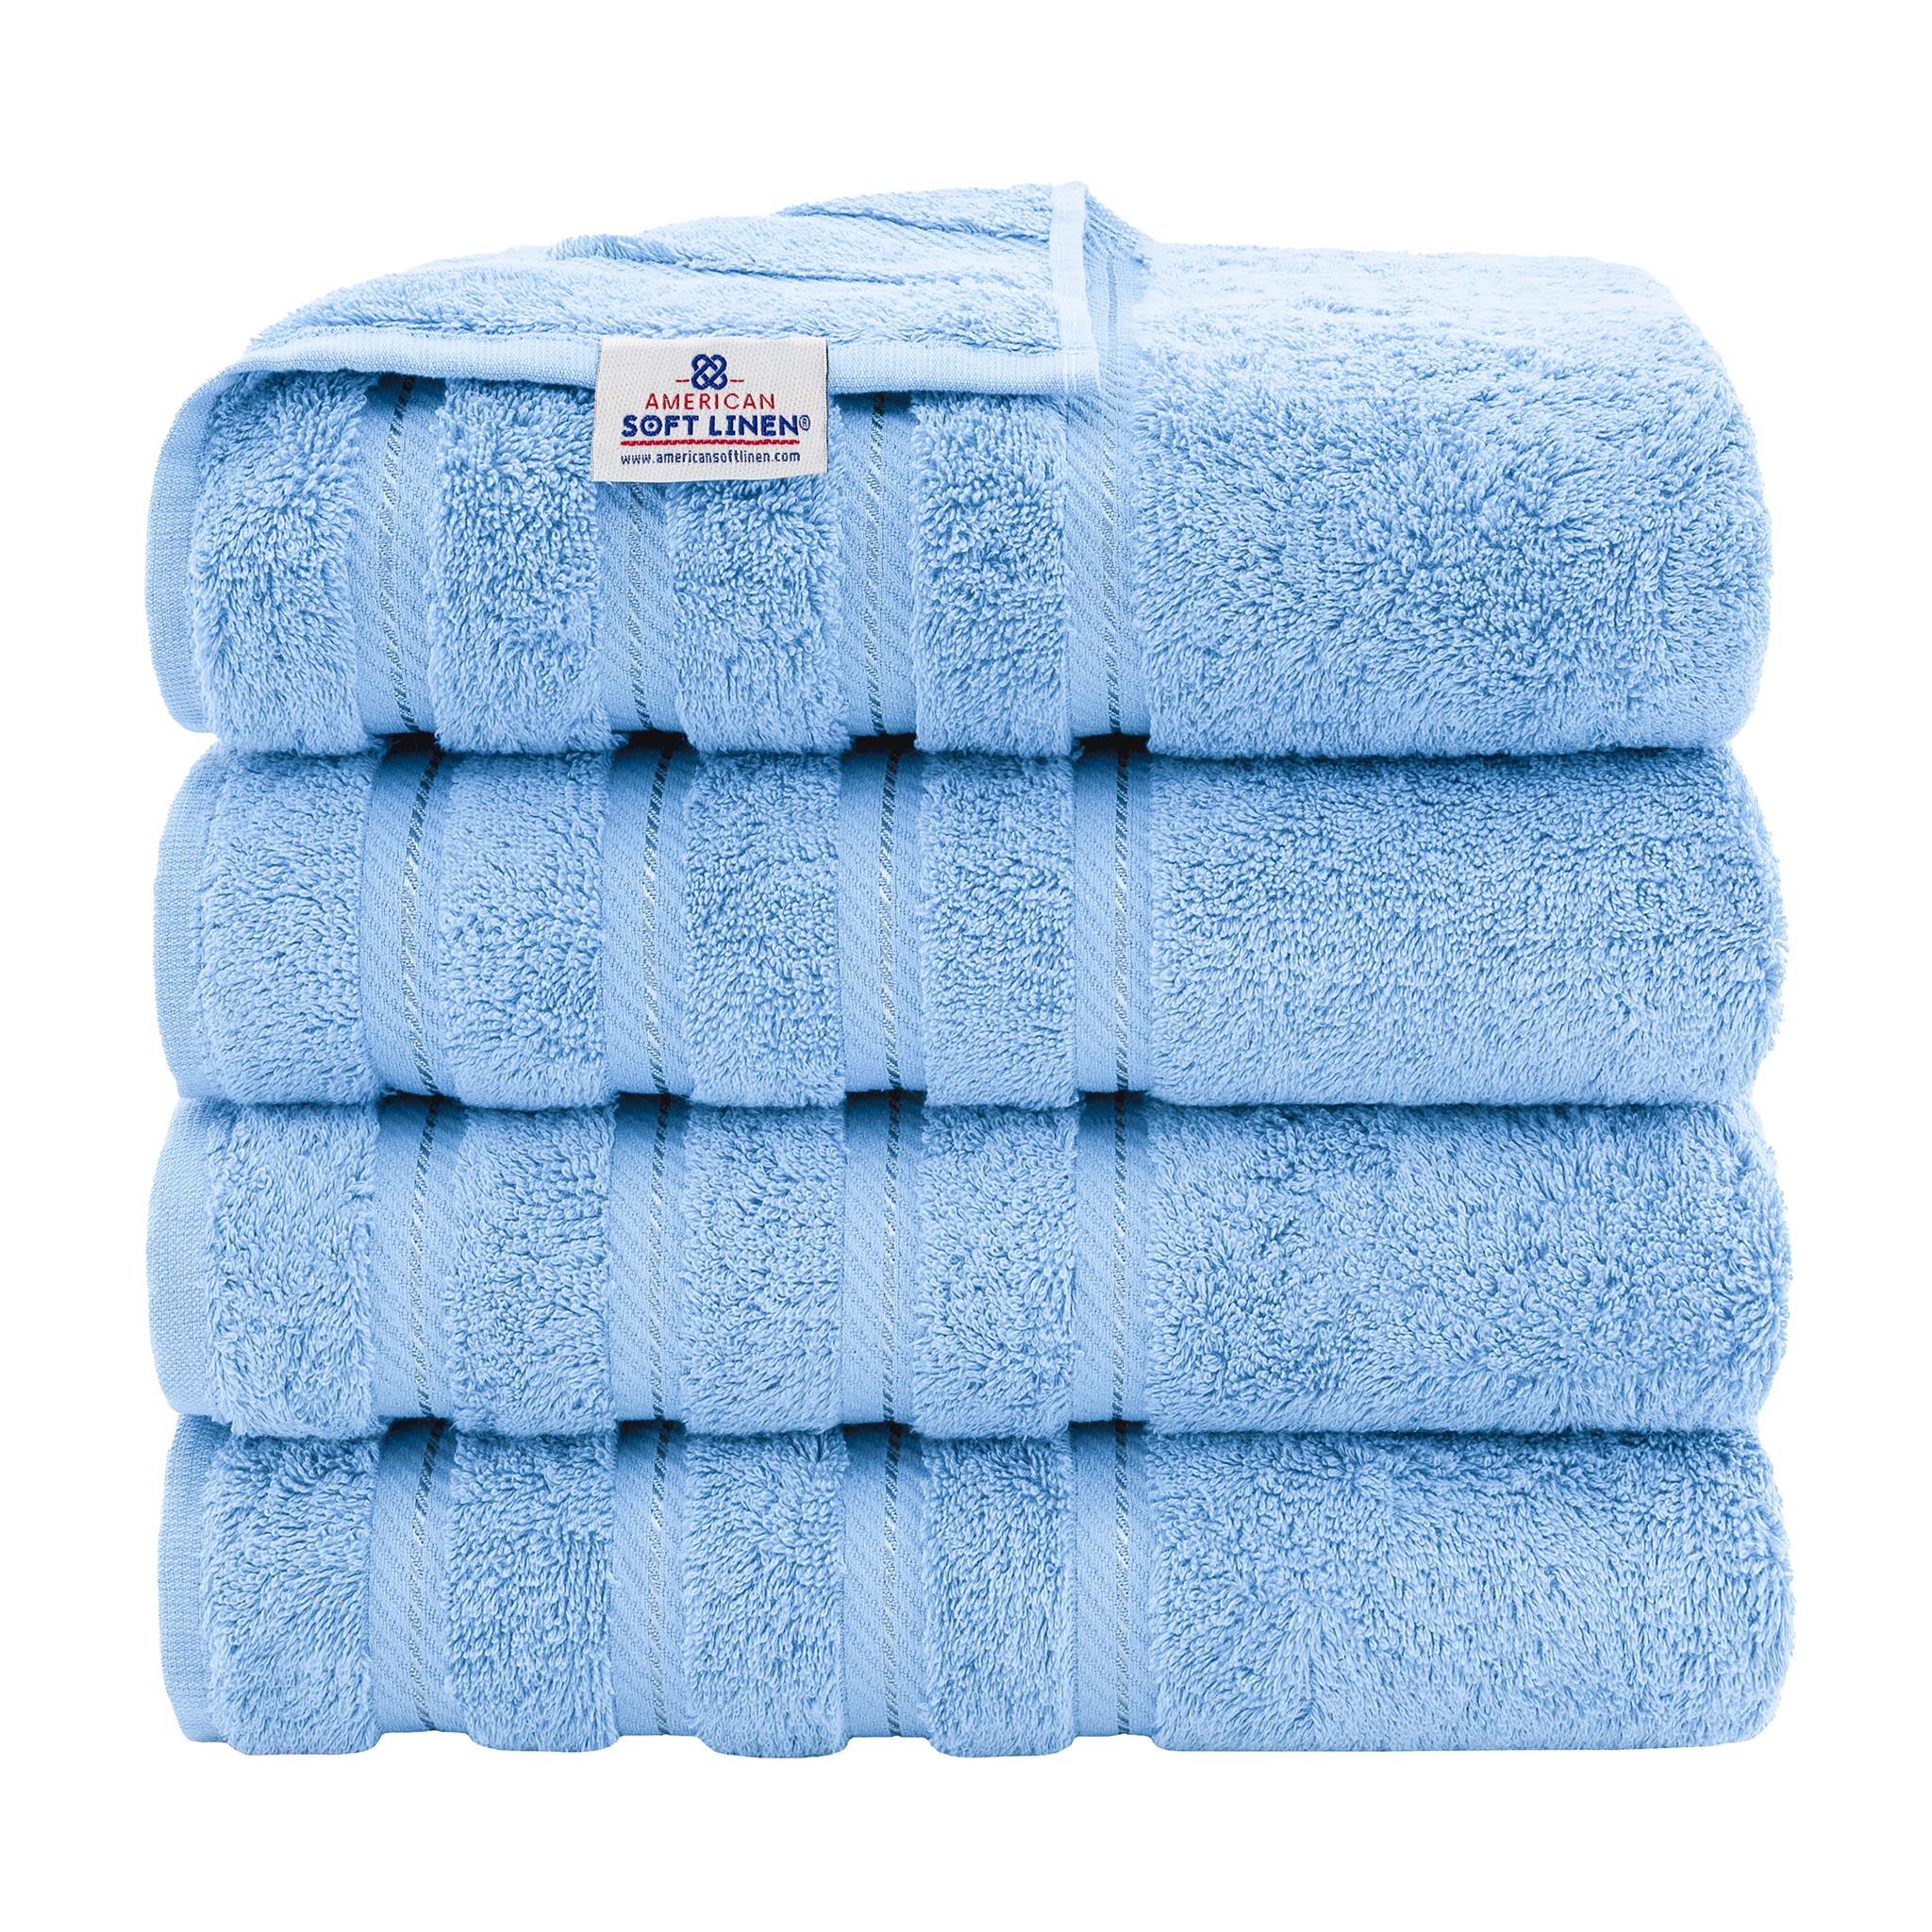 American Soft Linen 100% Turkish Cotton 4 Pack Bath Towel Set Wholesale sky-blue-1